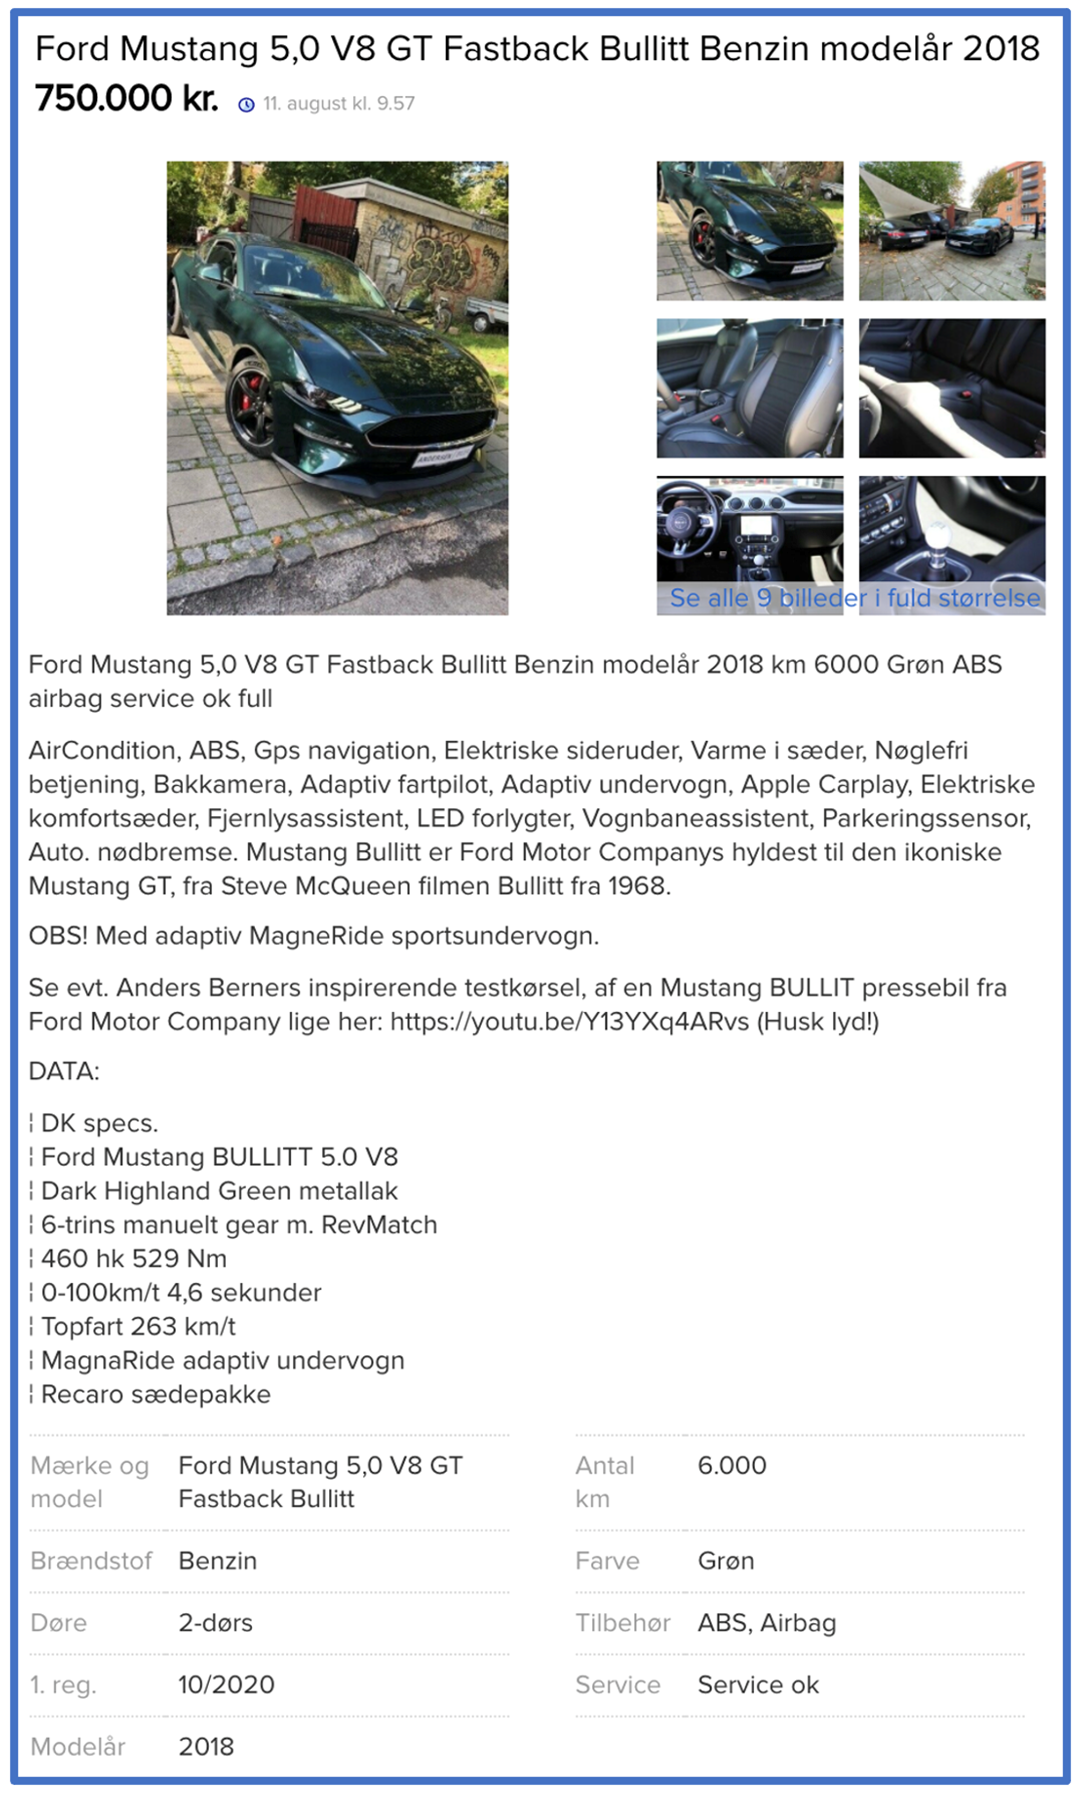 Hvis du skriver ”Mustang Bullitt” i søgefeltet på DBA, kommer der flere af denne model frem. En anden, der i skrivende stund er til salg på DBA, er en Ford Mustang 4,6 V8 GT Bullitt Benzin fra 2008. Den er til salg for 335.000 kroner.